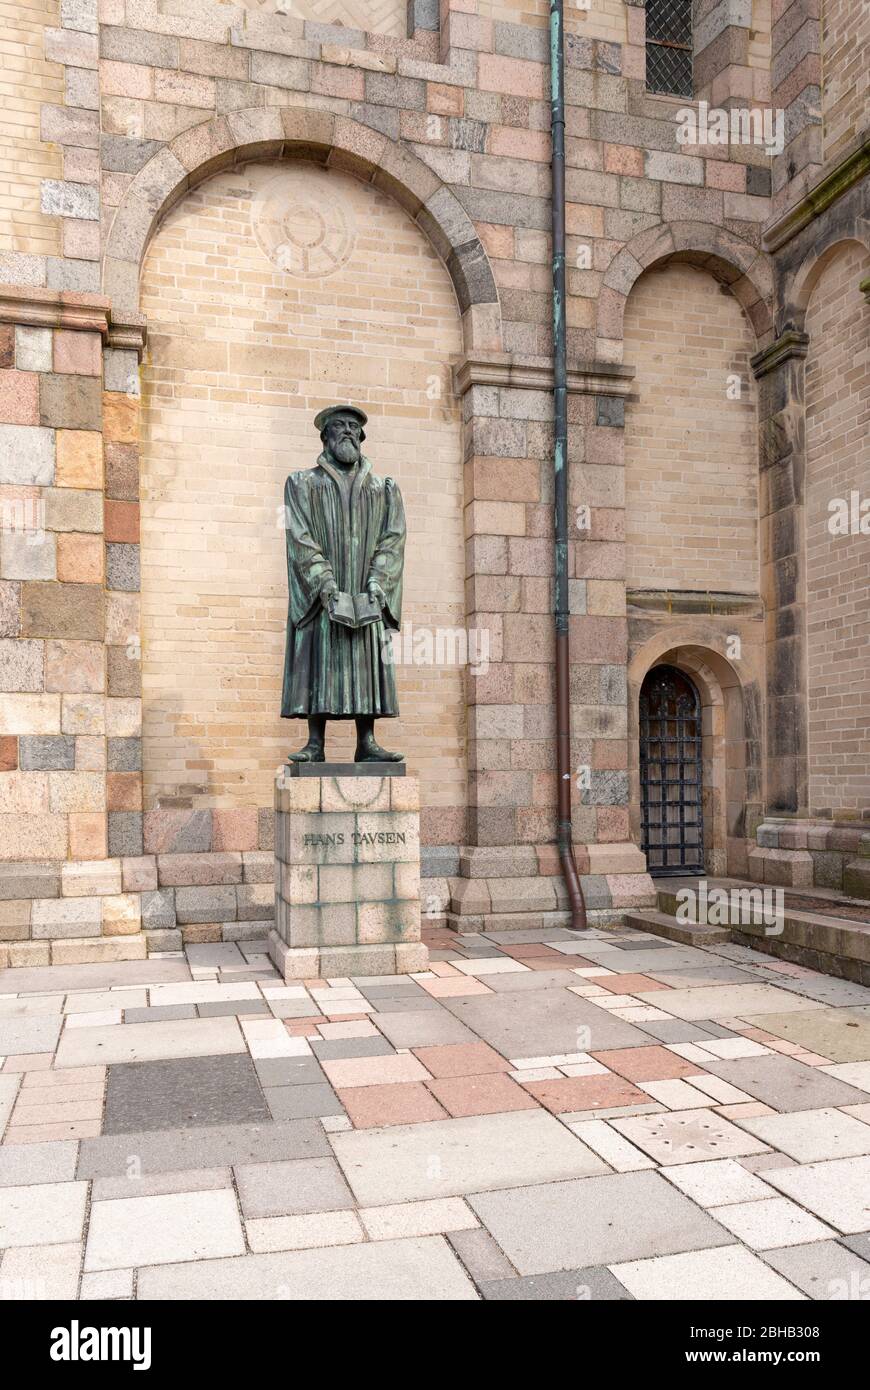 Dänemark, Jütland, Ribe (älteste Stadt Dänemarks), Statue in der Kathedrale, Hans Tavsen (1494-1561) dänischer Theologe und evangelischer Reformator. Stockfoto